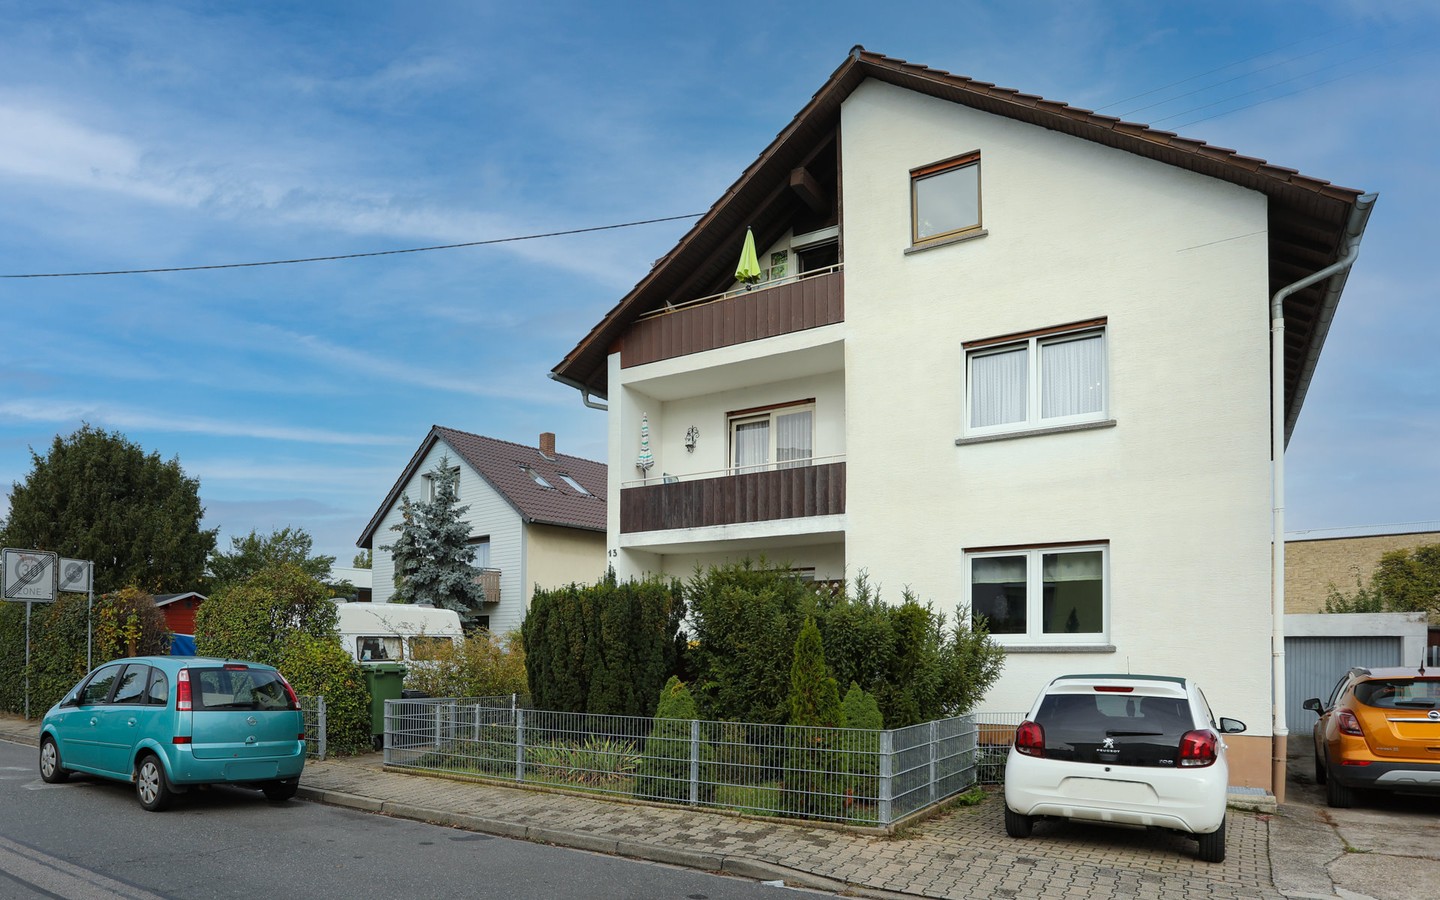 Ansicht - Eppelheim: MFH auf großem Erbpachtgrundstück in 
familienfreundlicher Wohnlage zur flexiblen Nutzung